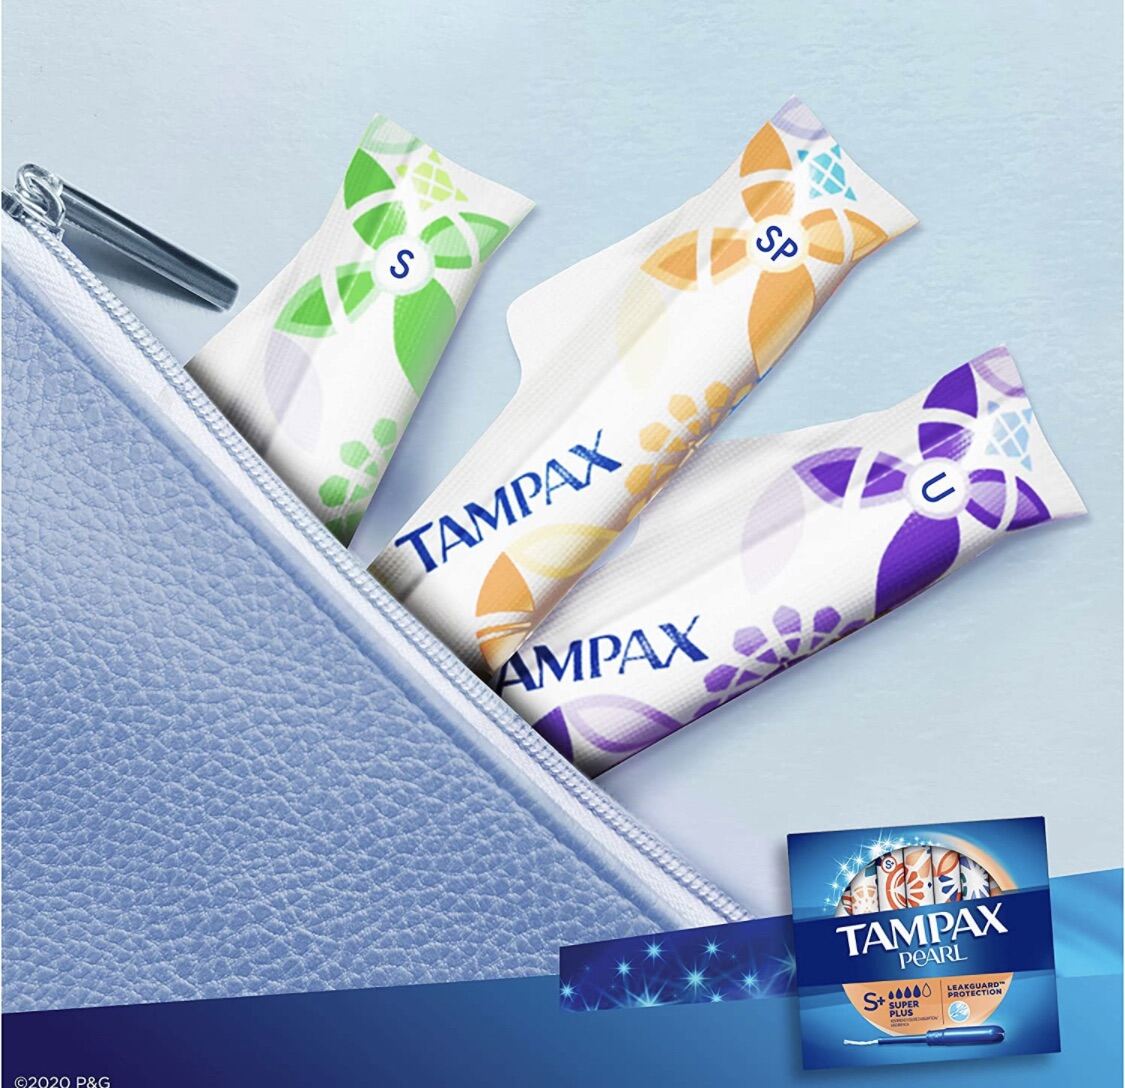 Tampon Tampax Pearl Băng Vệ sinh dạng ống của Mỹ nhập khẩu